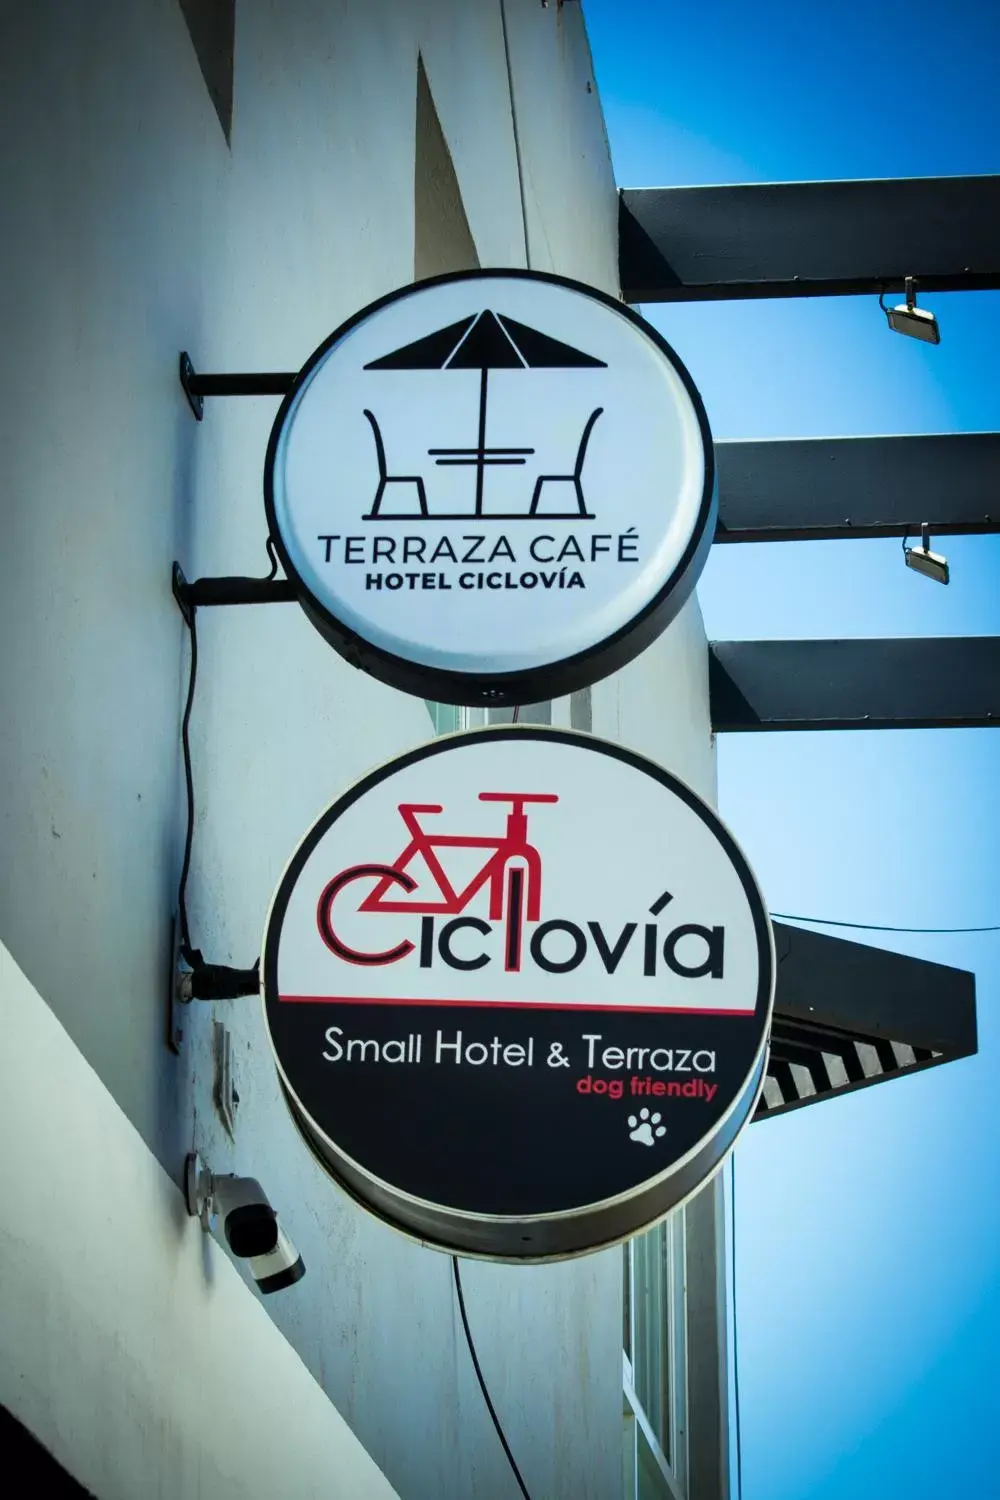 Property logo or sign in Hotel Ciclovía & Terraza